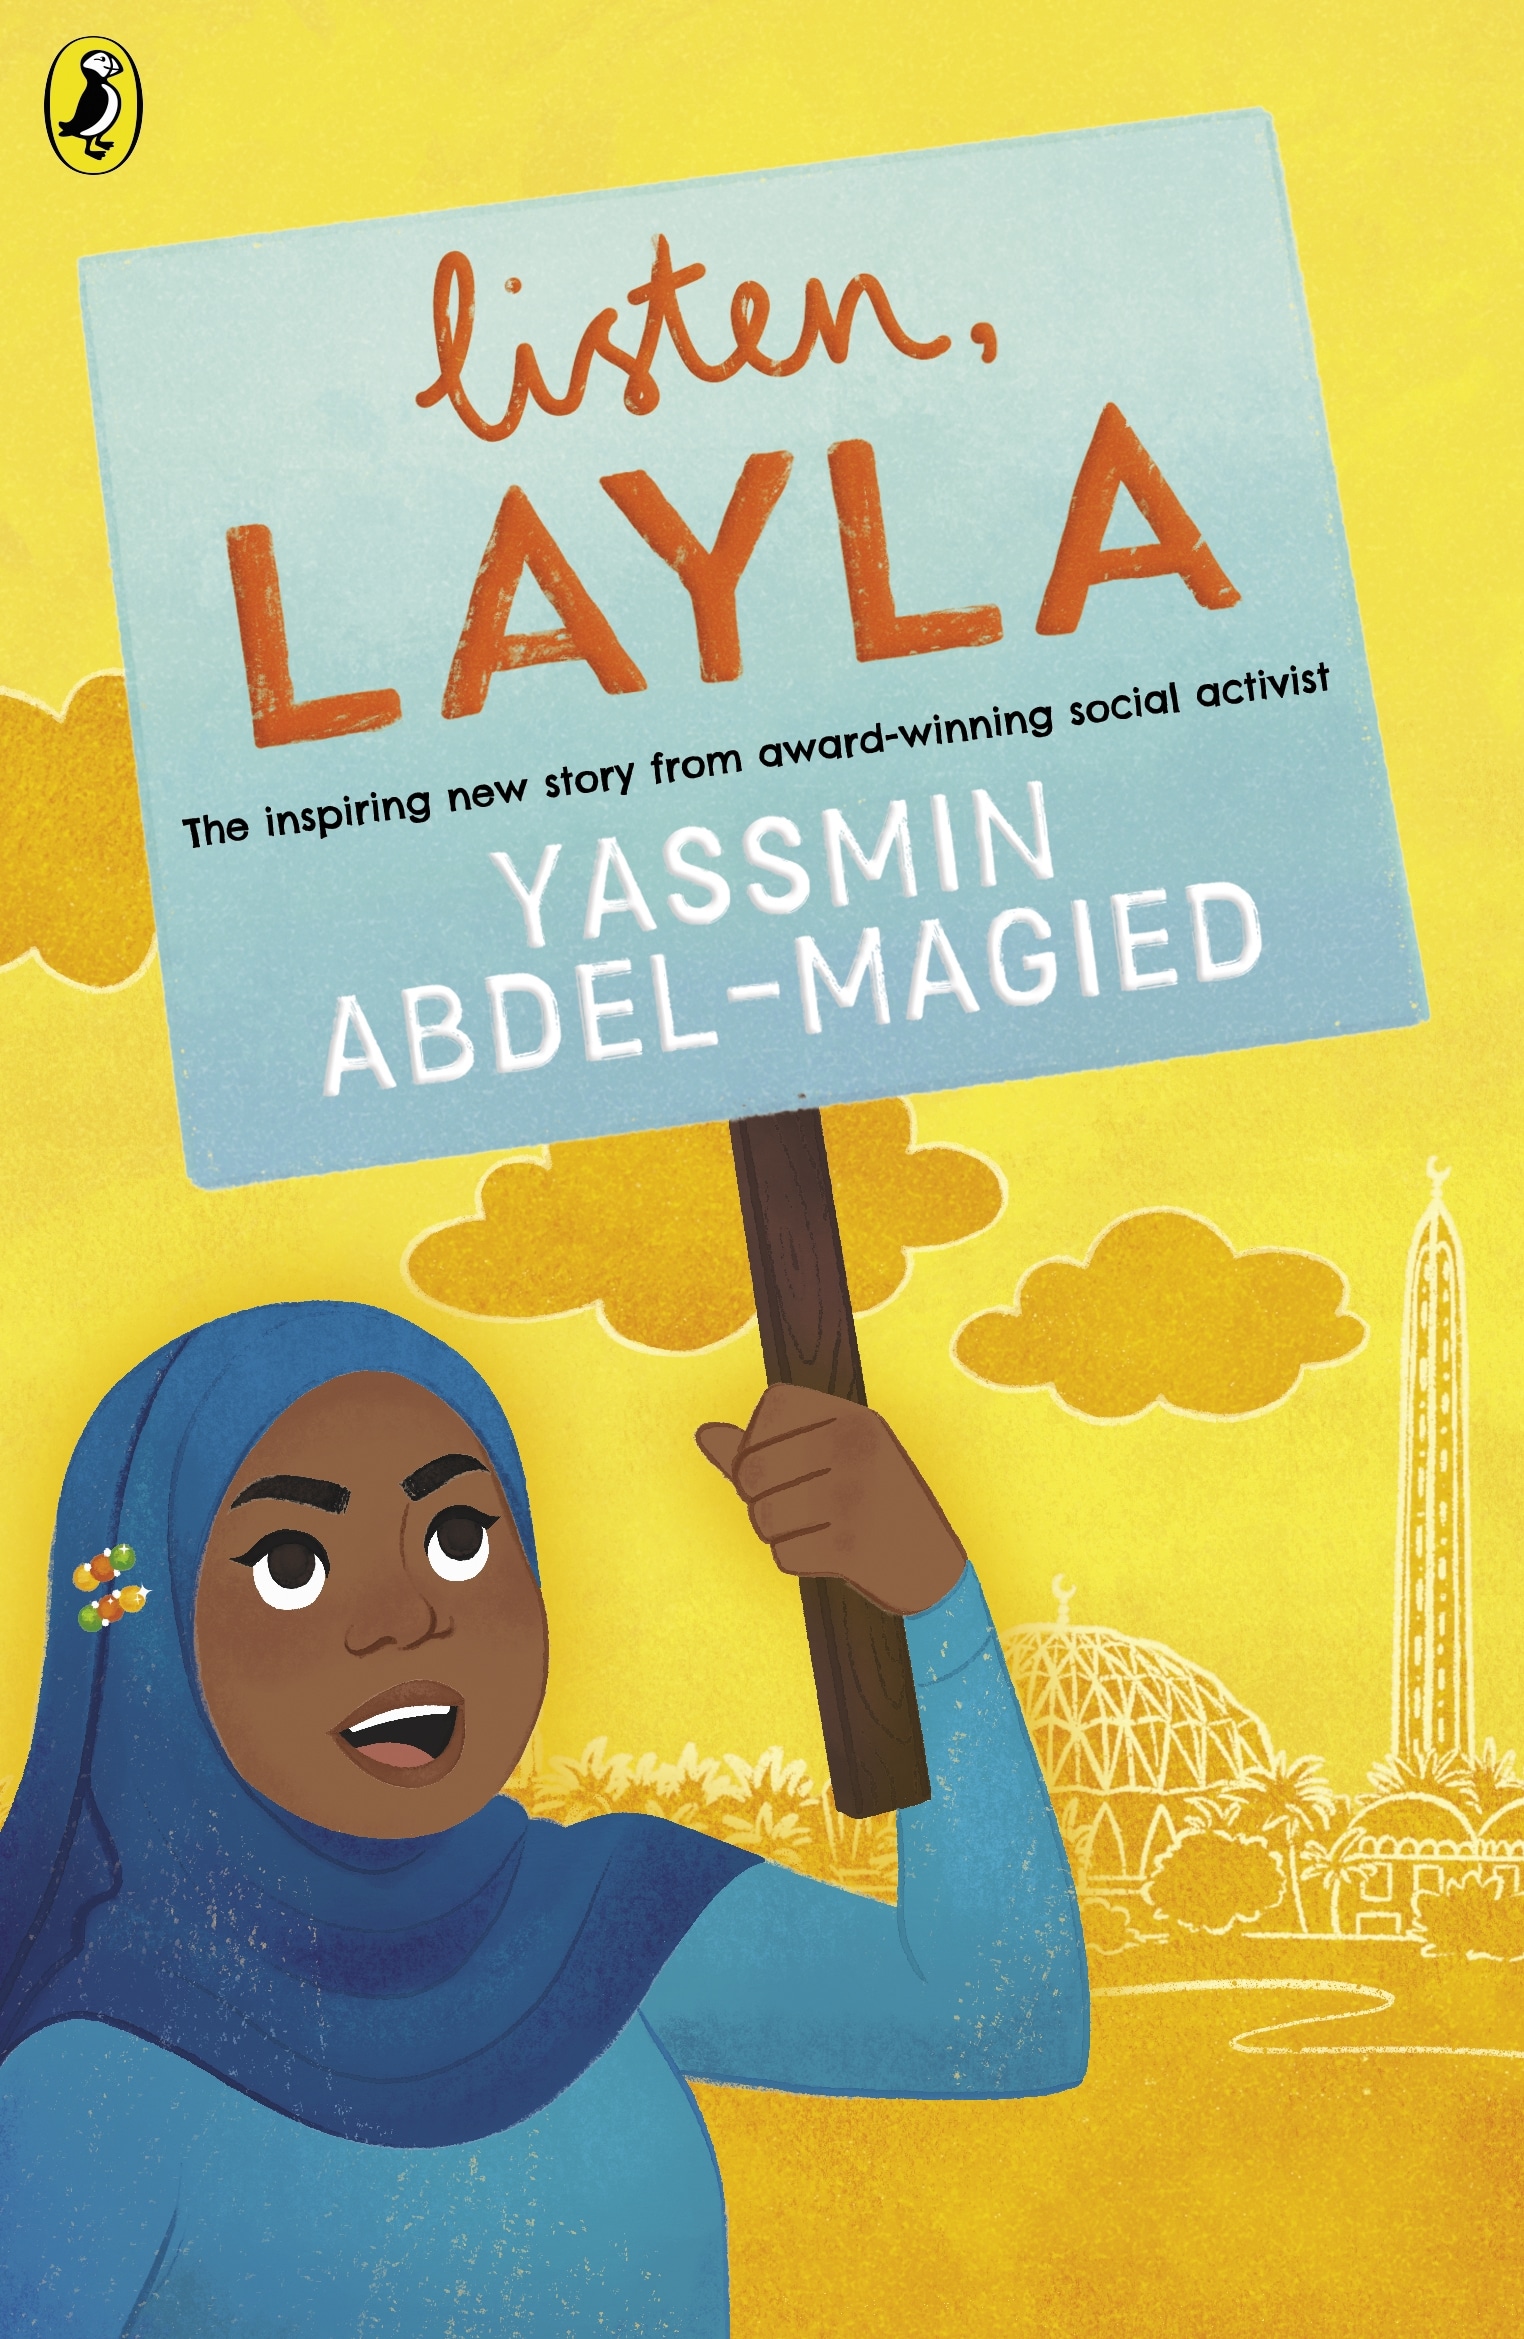 Book “Listen, Layla” by Yassmin Abdel-Magied — July 22, 2021